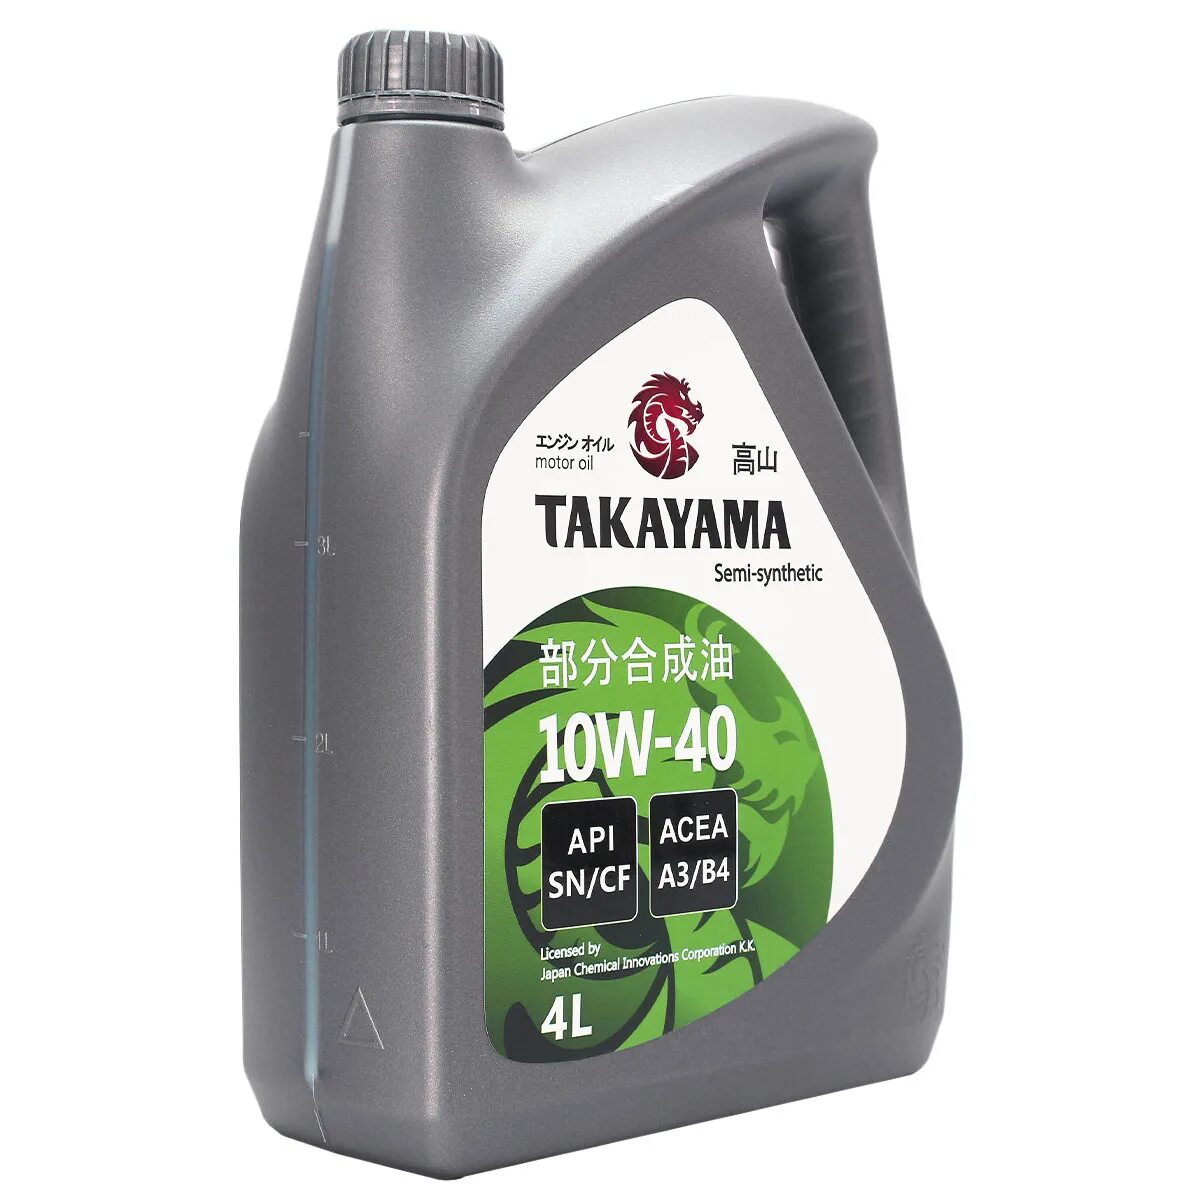 Купить моторное масло такаяма. Масло моторное Takayama 10w-40 API SN/CF 4л (пластик). Масло Такаяма 10w 40. Масло Такаяма 10w 40 отзывы. Takayama 10w 40 полусинтетика отзывы.